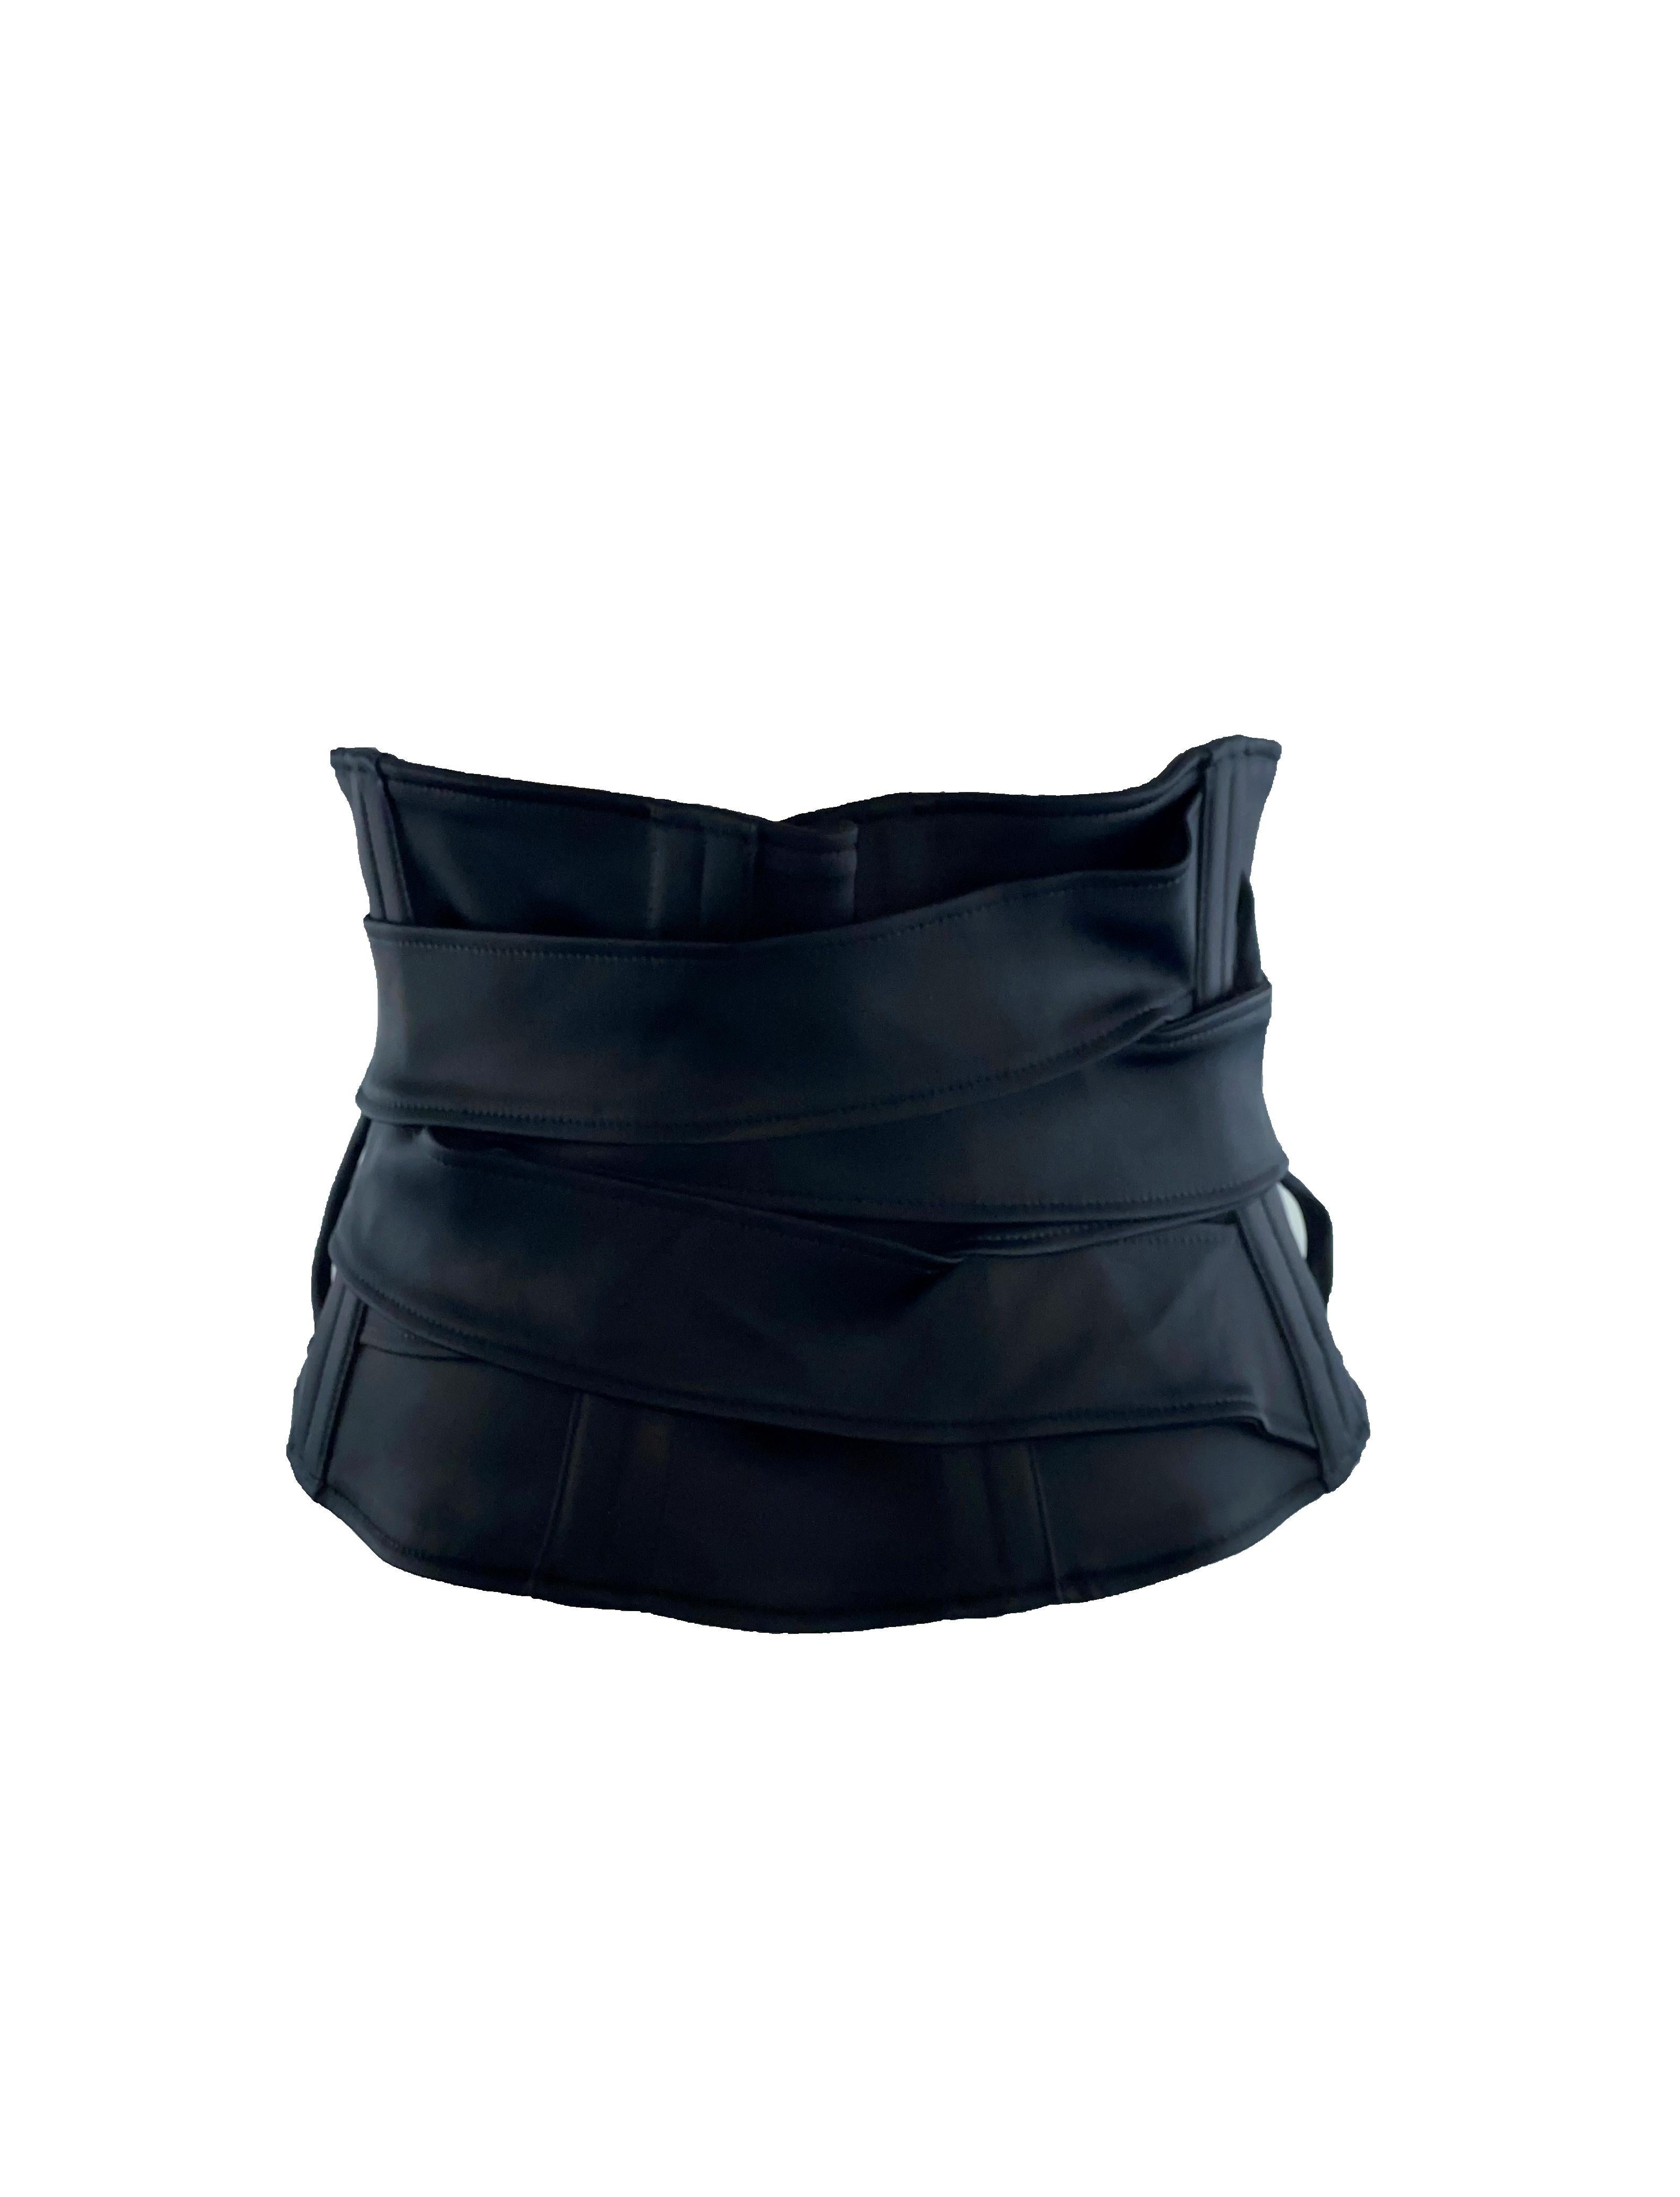 Magnifique ceinture-corset noire GUCCI.
De la célèbre collection automne/hiver 2003 de GUCCI by TOM FORD.
Ferrures en or mat discrètement gravées de 